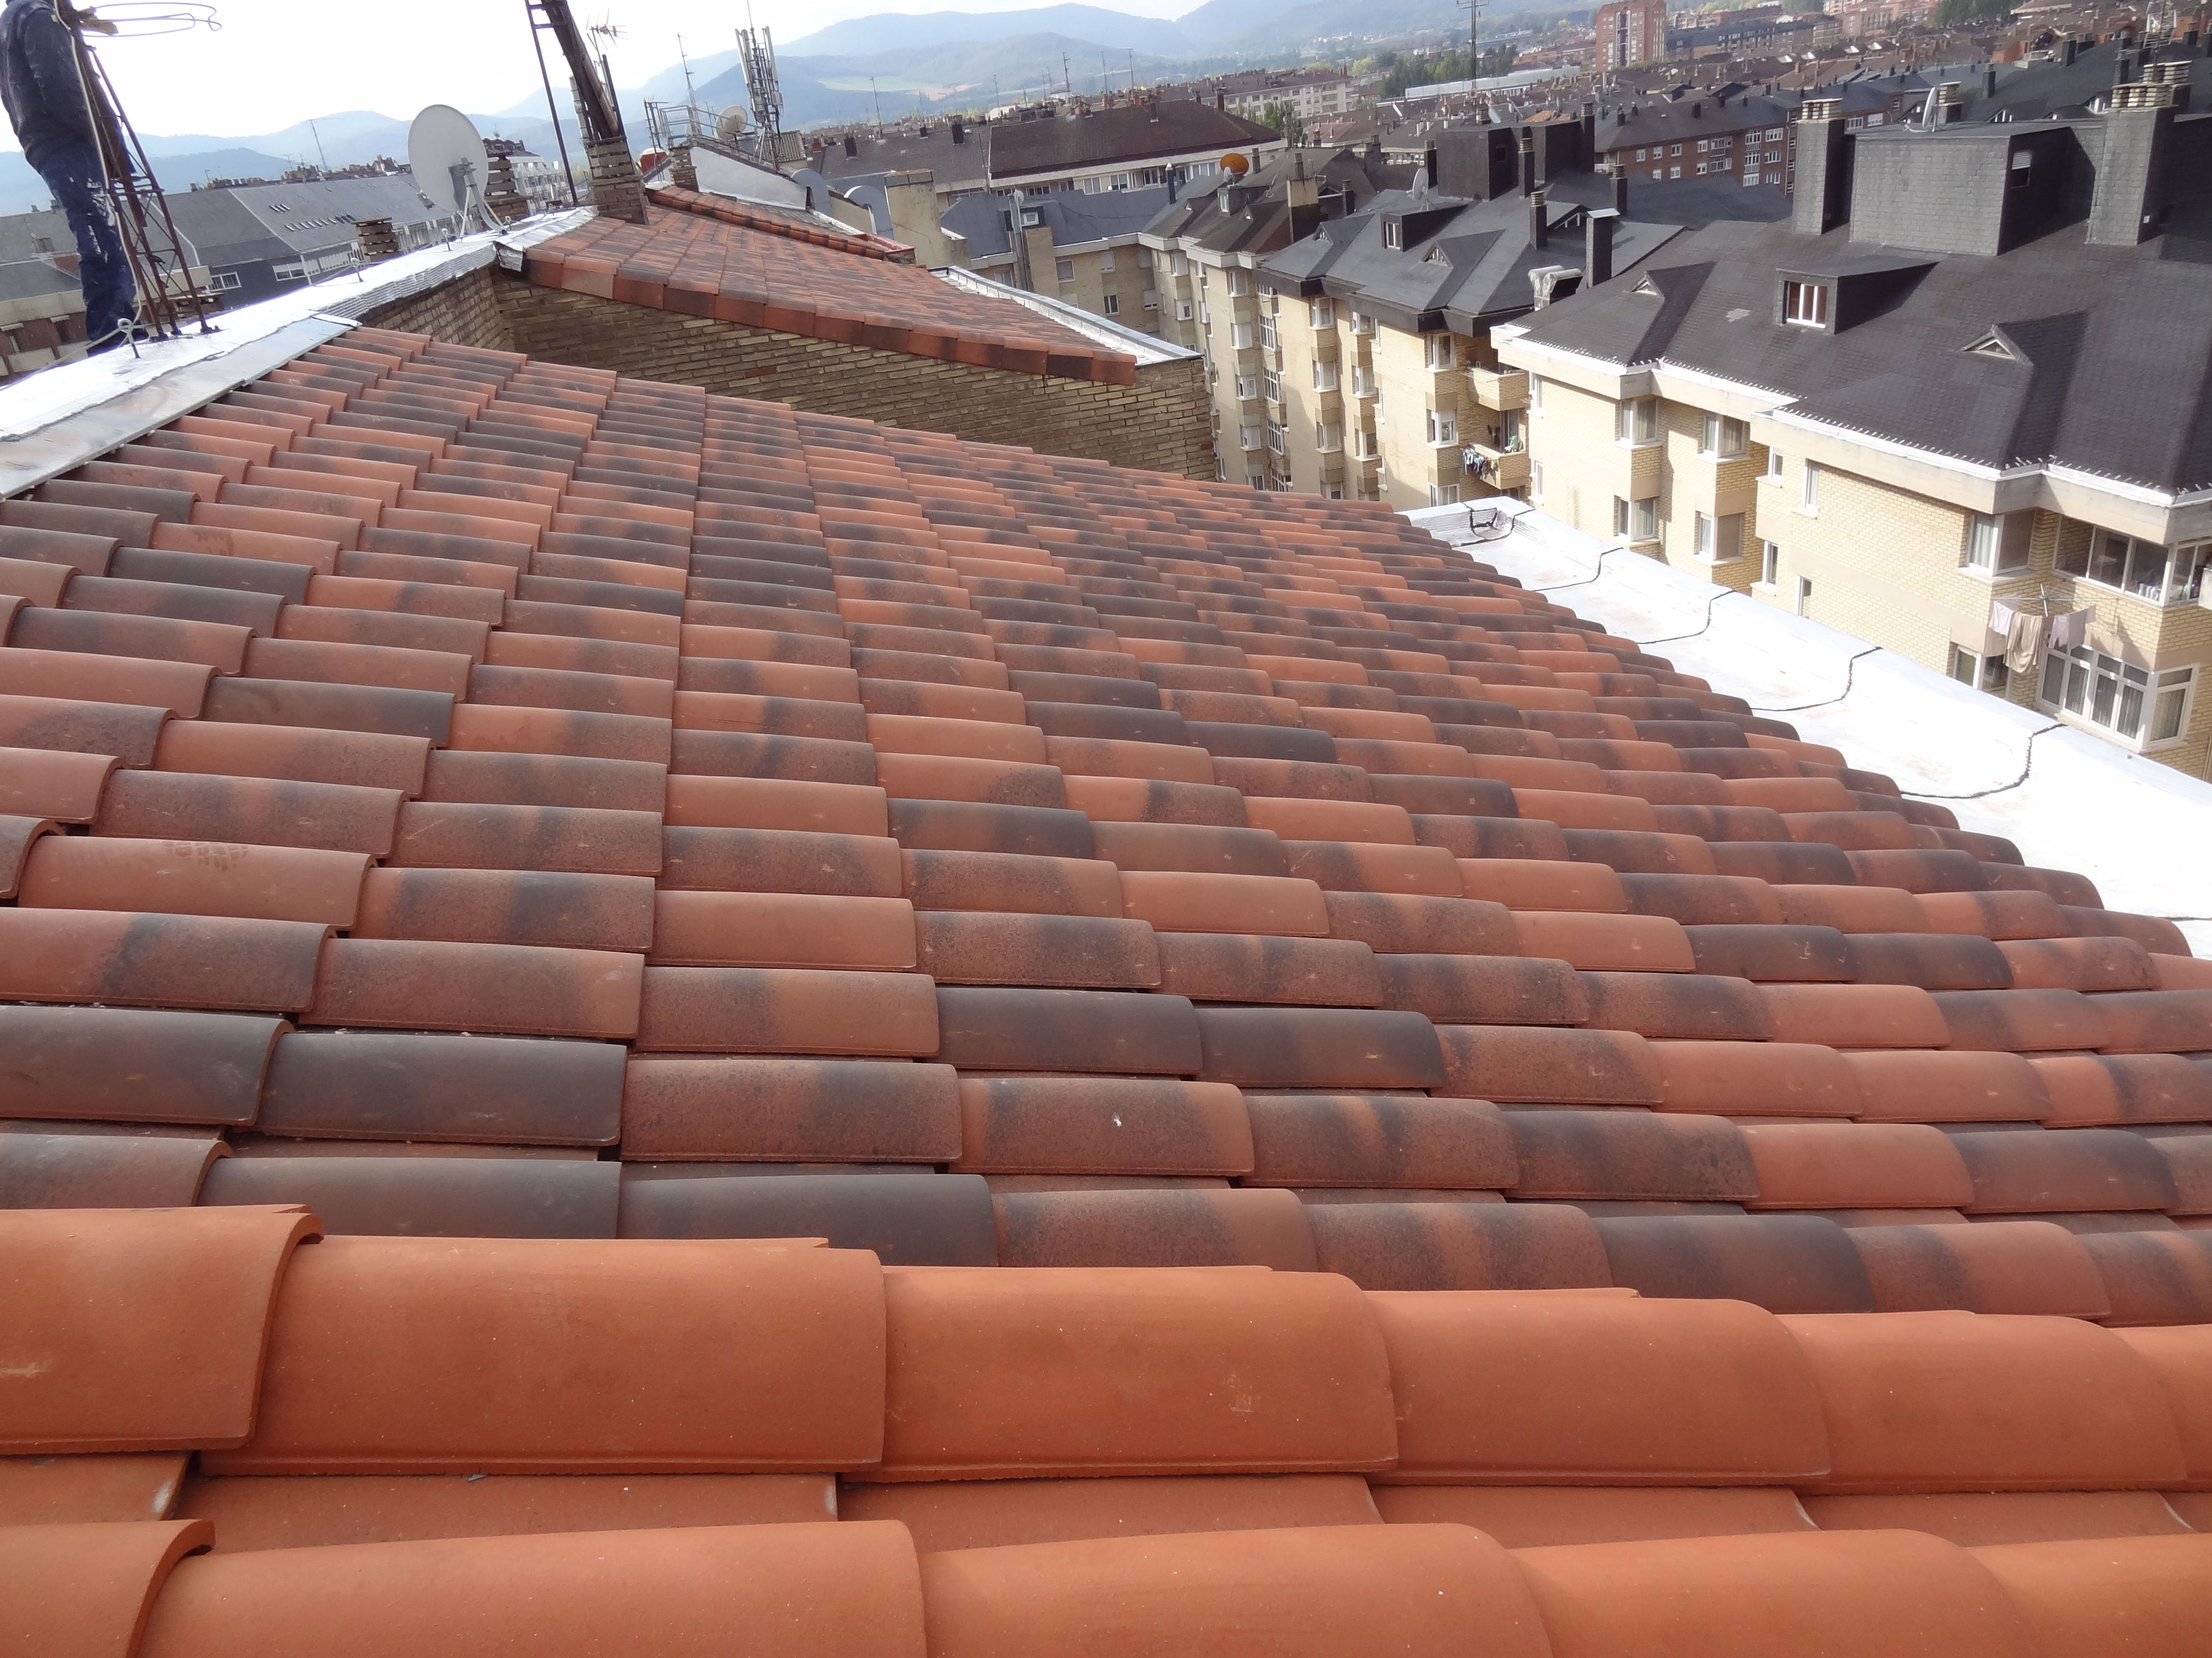 Rehabilitación de tejado en Av. Gasteiz, 51, Vitoria-Gasteiz, después de la obra